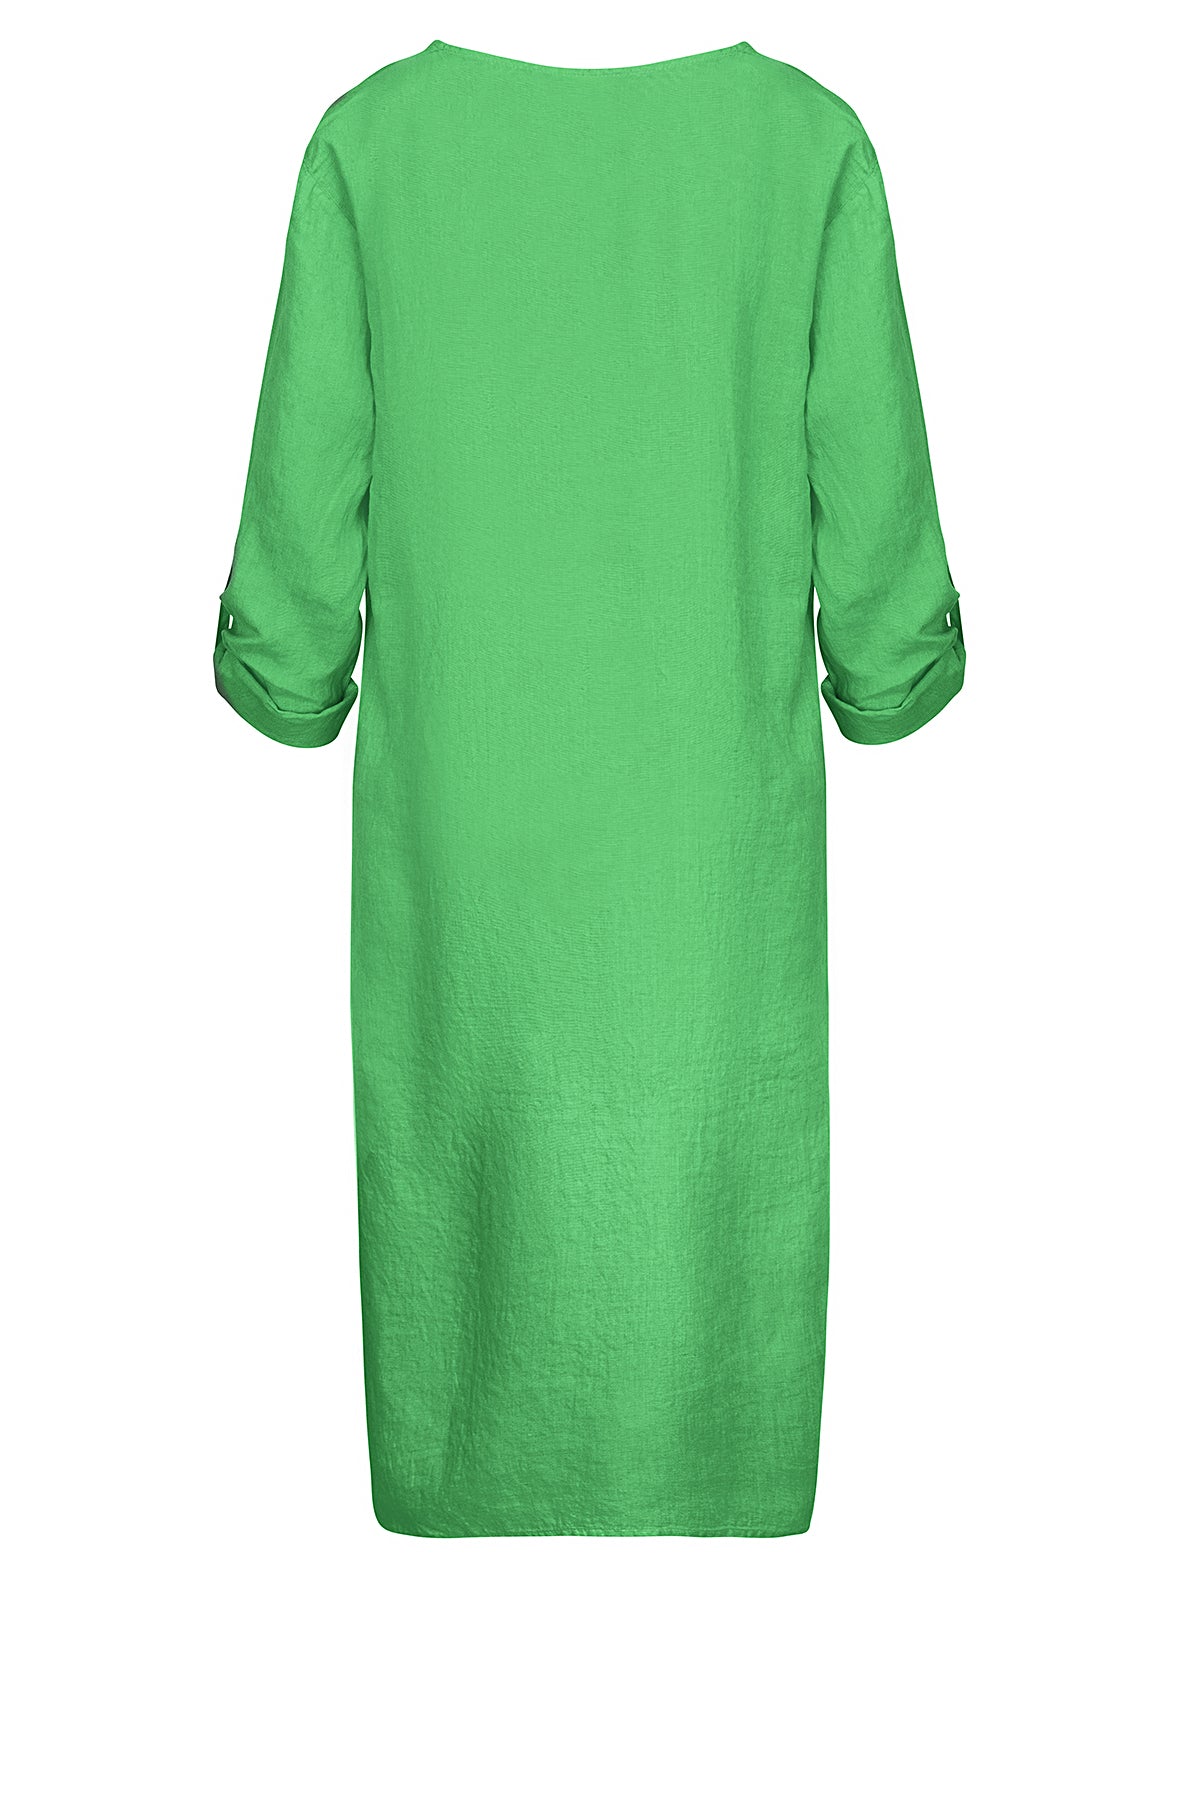 LUXZUZ // ONE TWO Kaja Dress Dress 623 Kelly Green